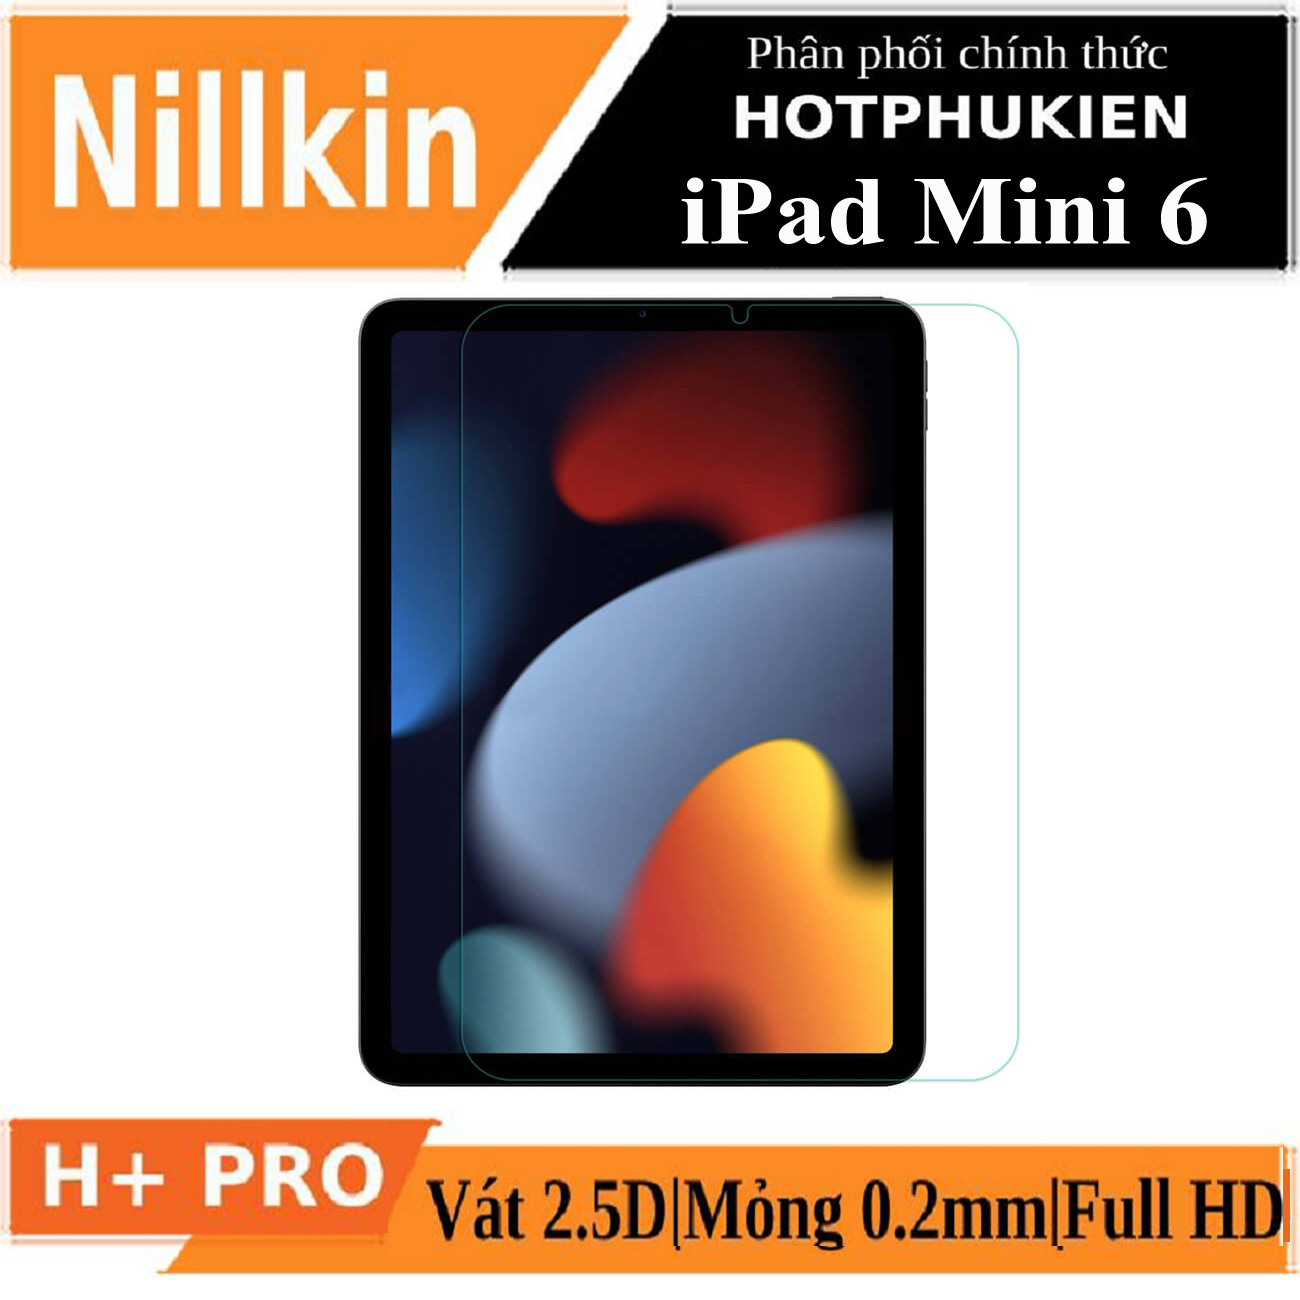 Miếng dán kính cường lực cho iPad Mini 6 hiệu Nillkin Amazing H+ Pro